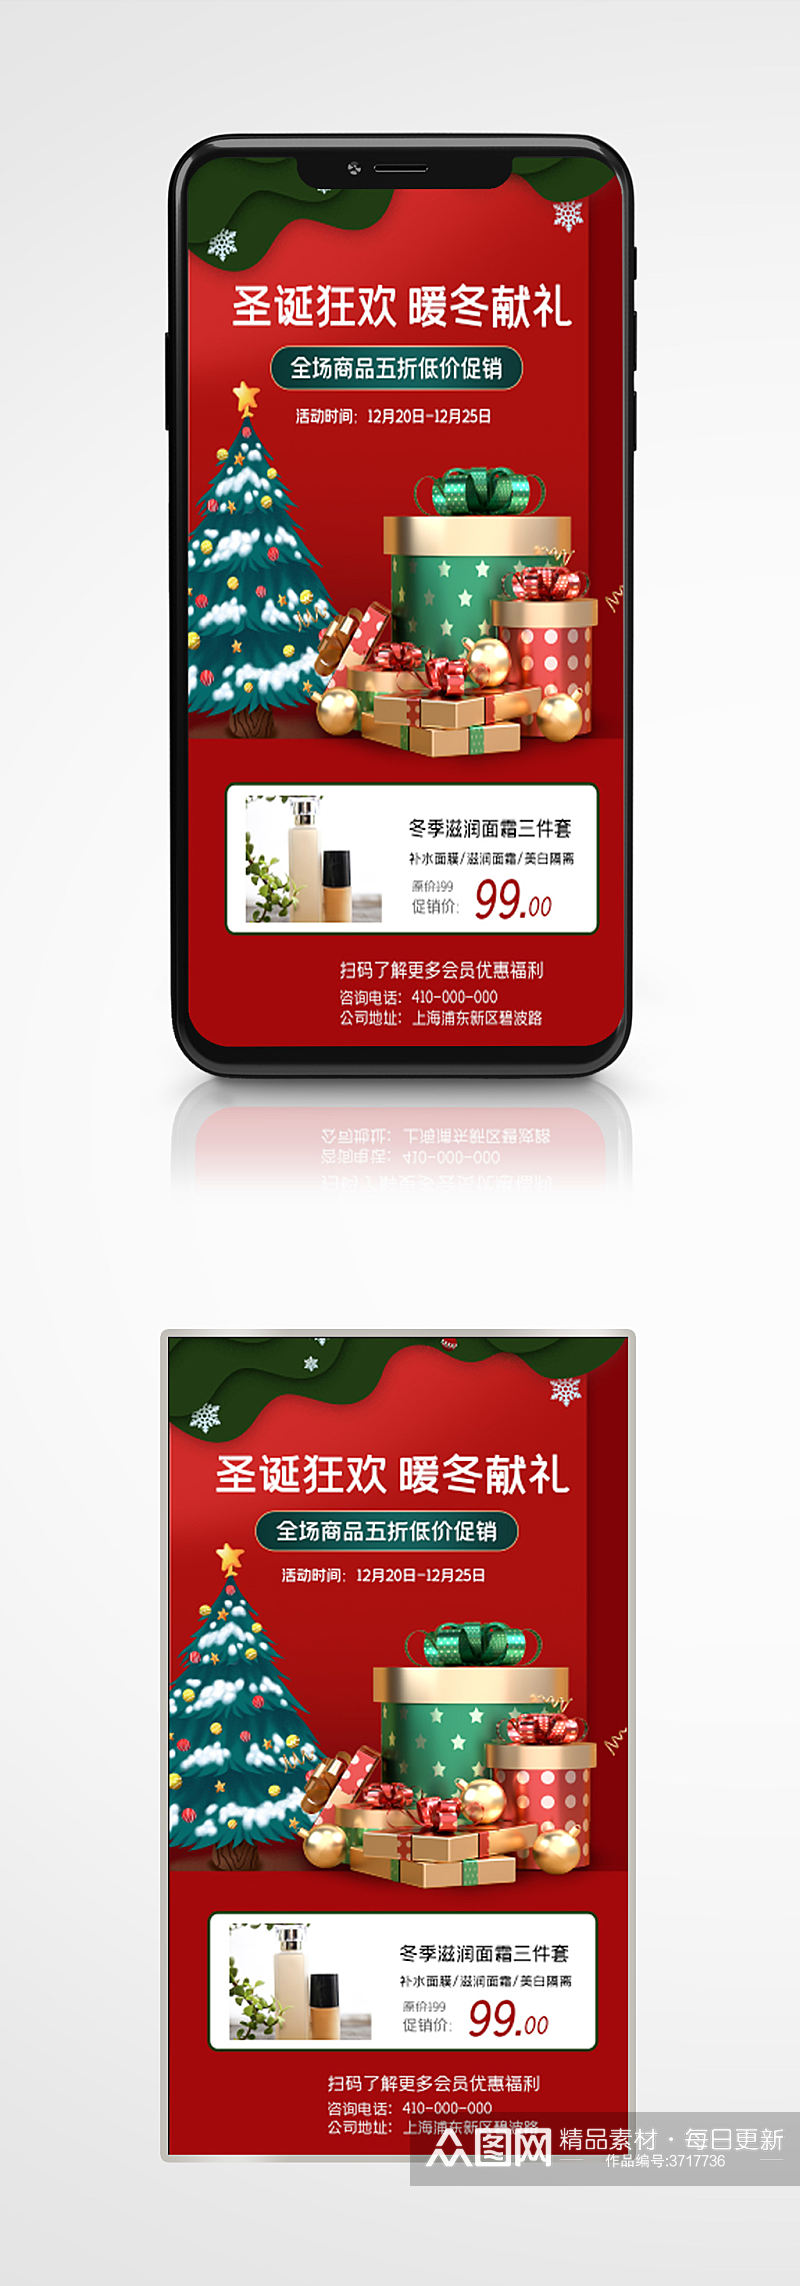 圣诞狂欢促销活动手机海报红色节日素材